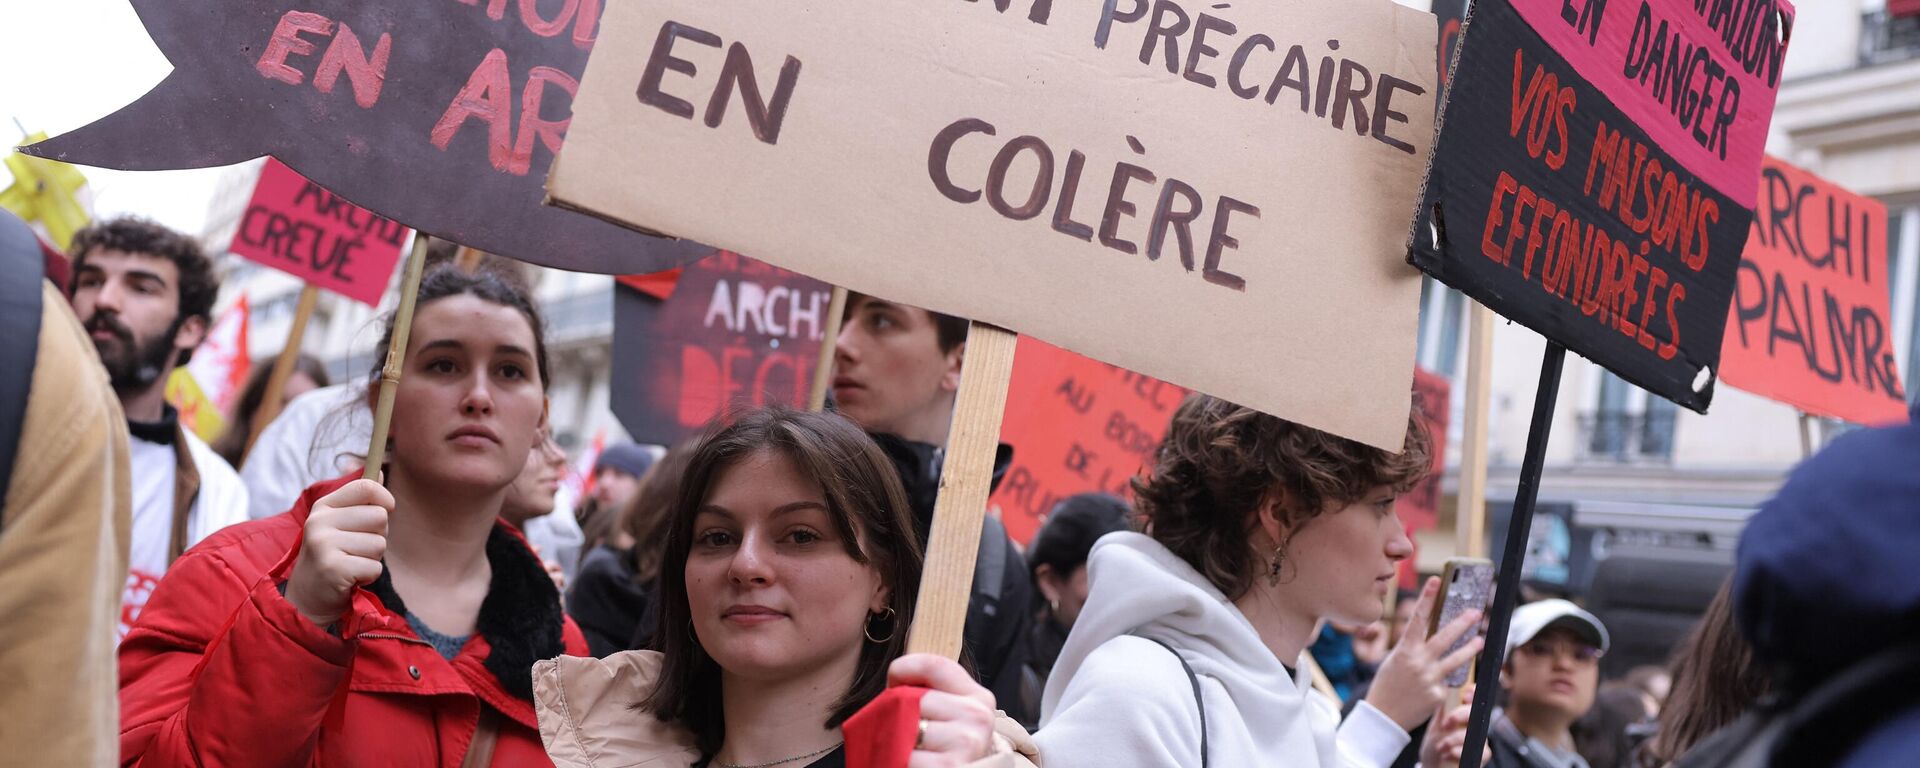 Thanh niên tuần hành phản đối cải cách lương hưu ở Paris, ngày 9 tháng 3 năm 2023 - Sputnik Việt Nam, 1920, 12.03.2023